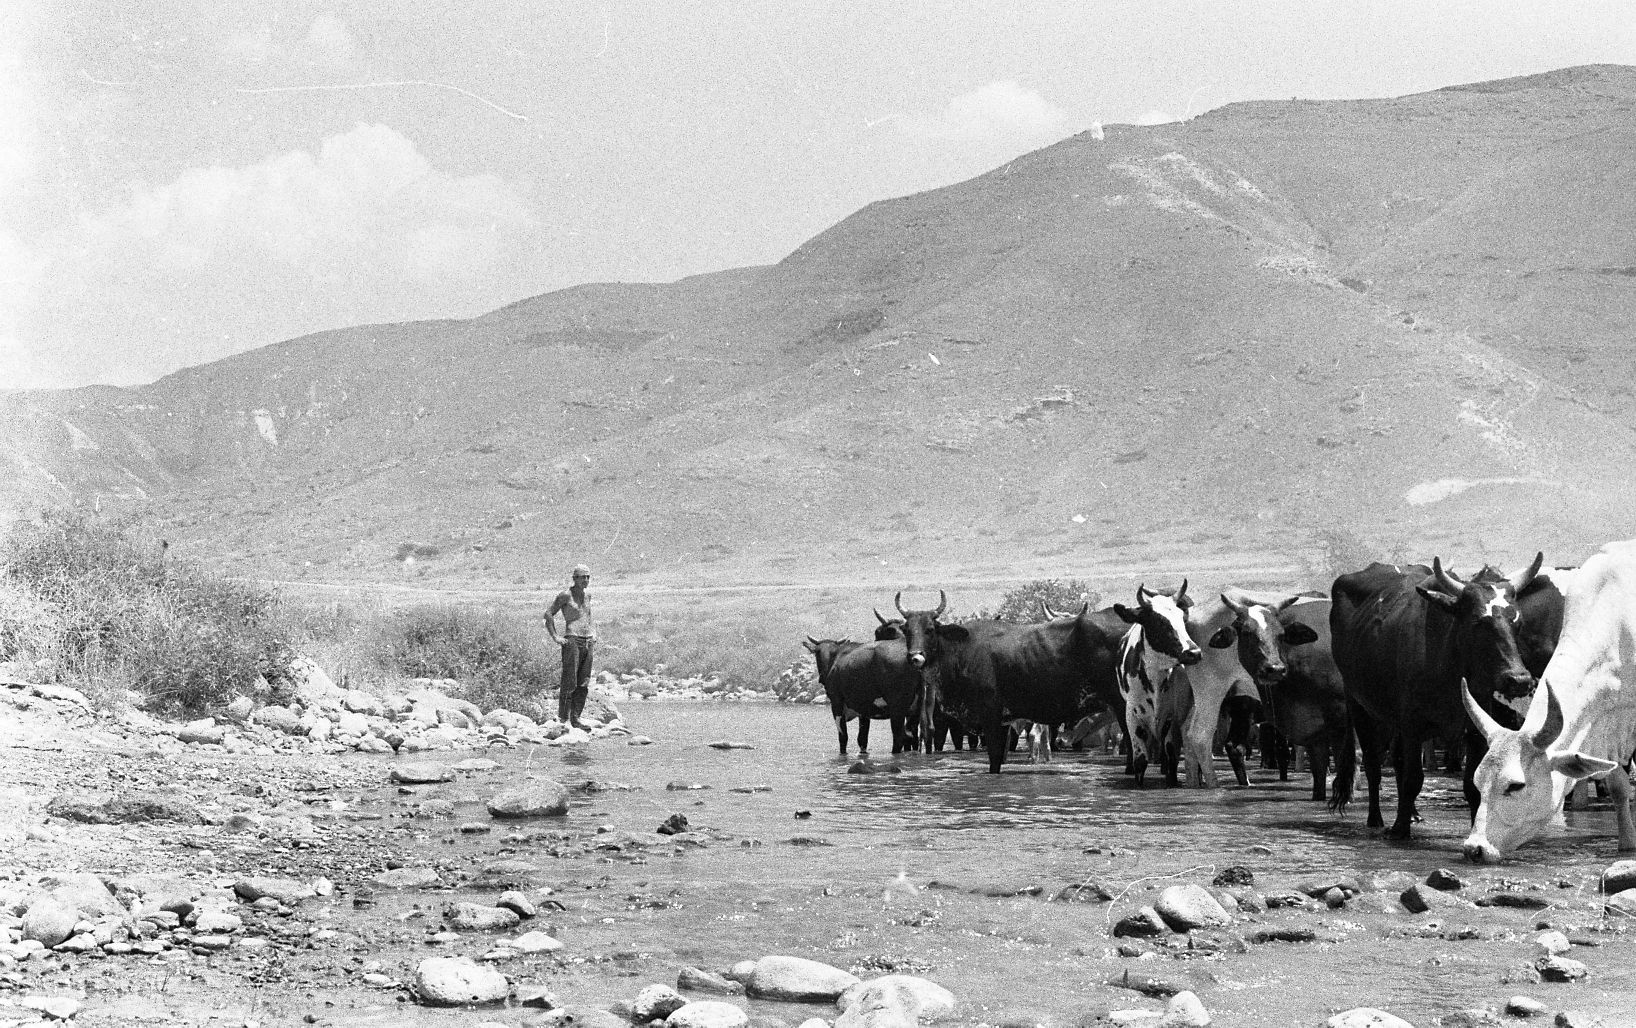 Hirte mit Vieh in der Wüste